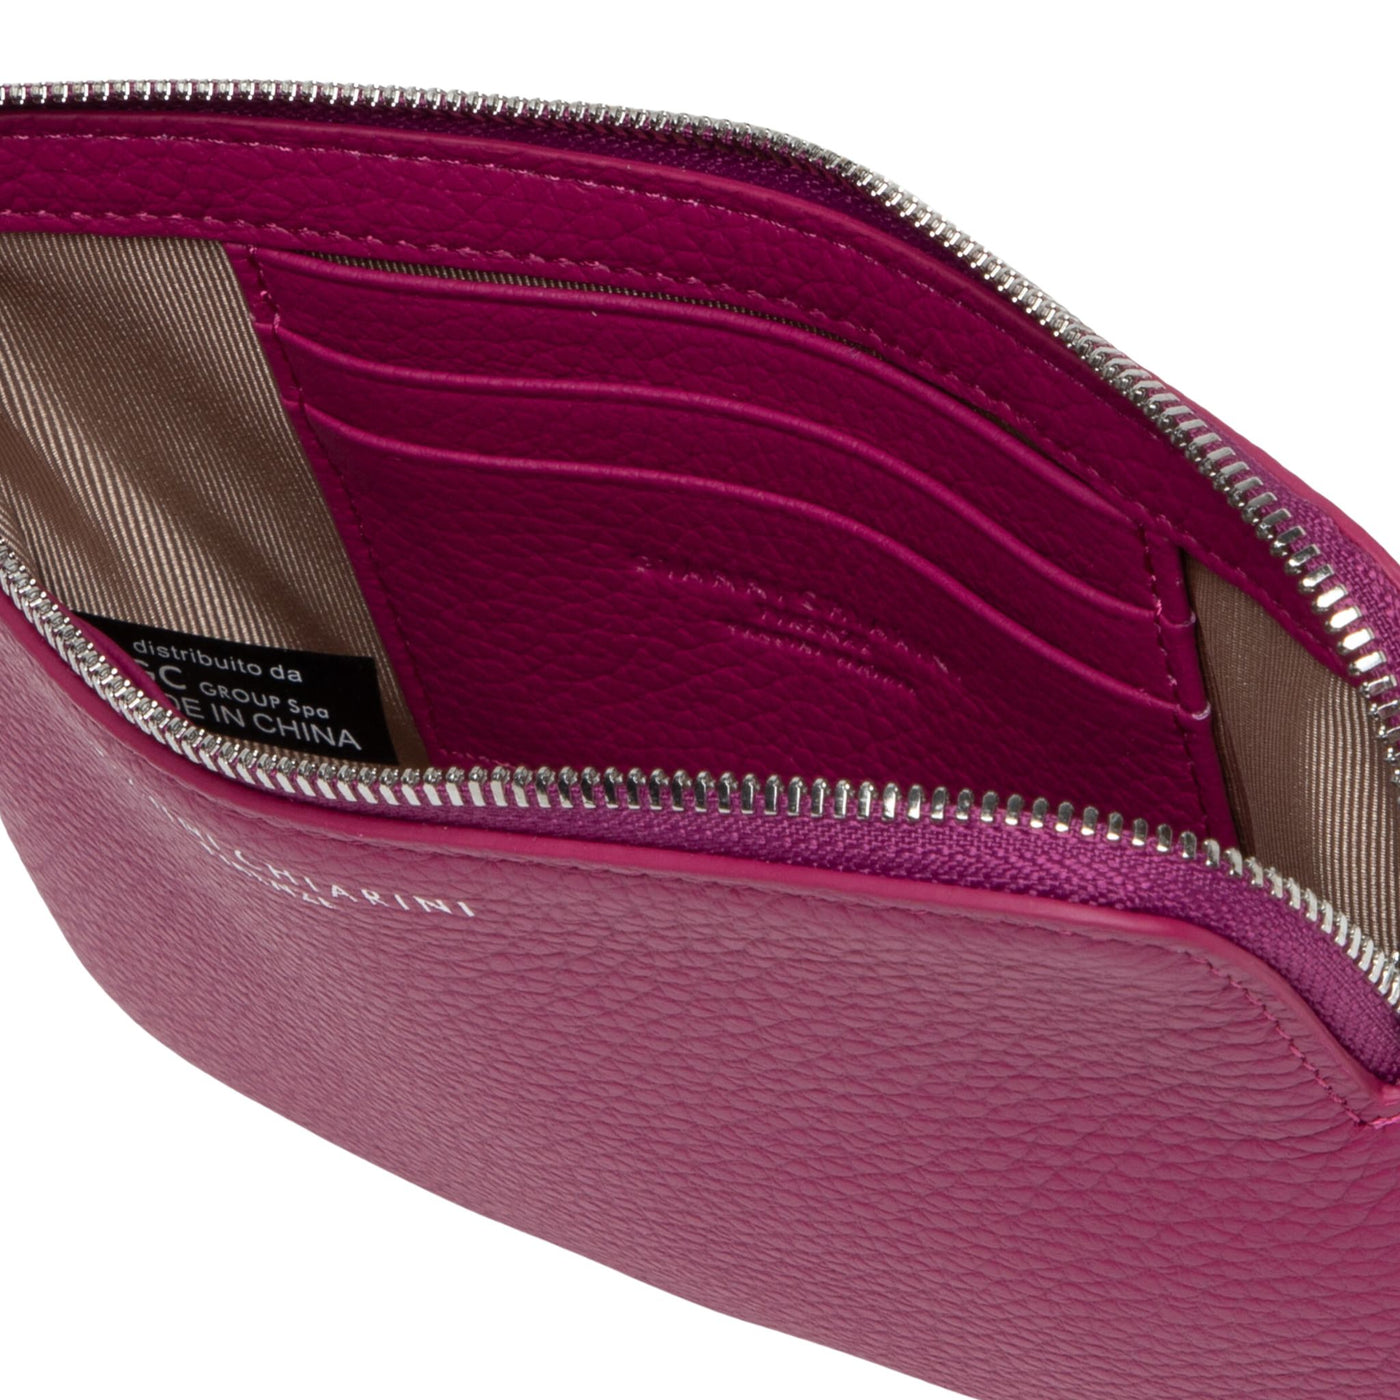 Fuchsia women's wallet with zip